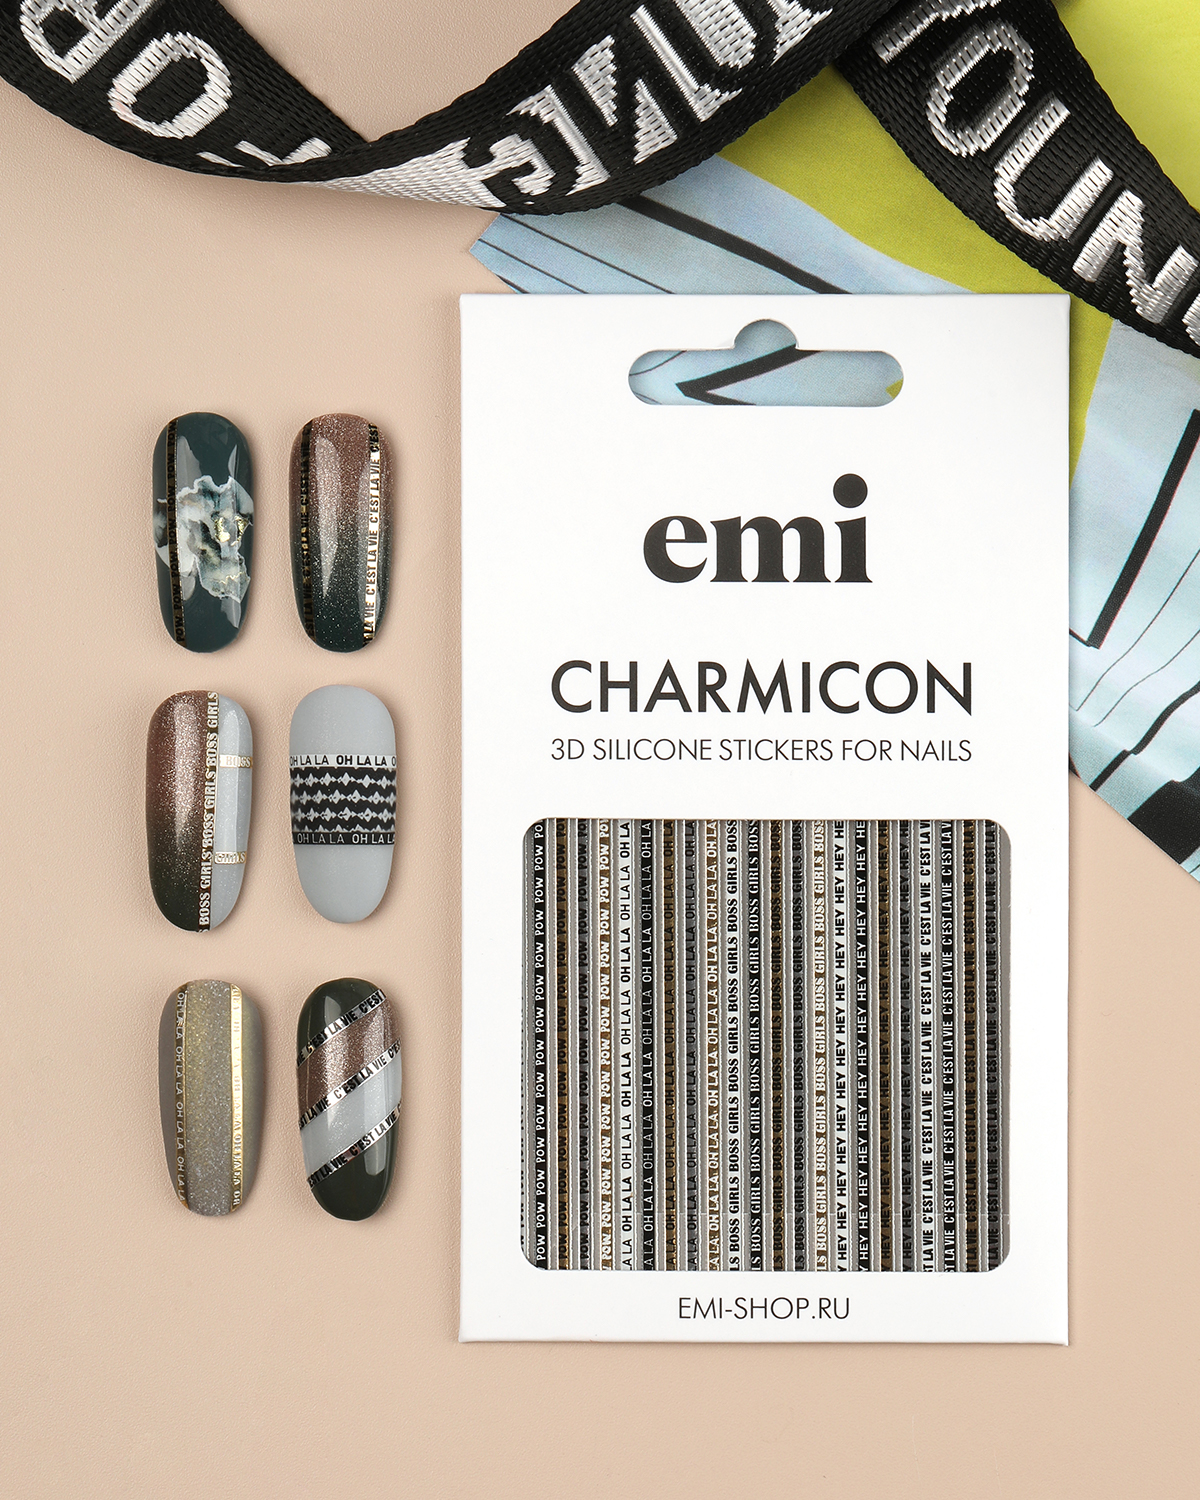 Объемные наклейки для дизайна ногтей EMi Charmicon 3D Silicone Stickers №244 Oh la la наклейки объемные чебурашка 1